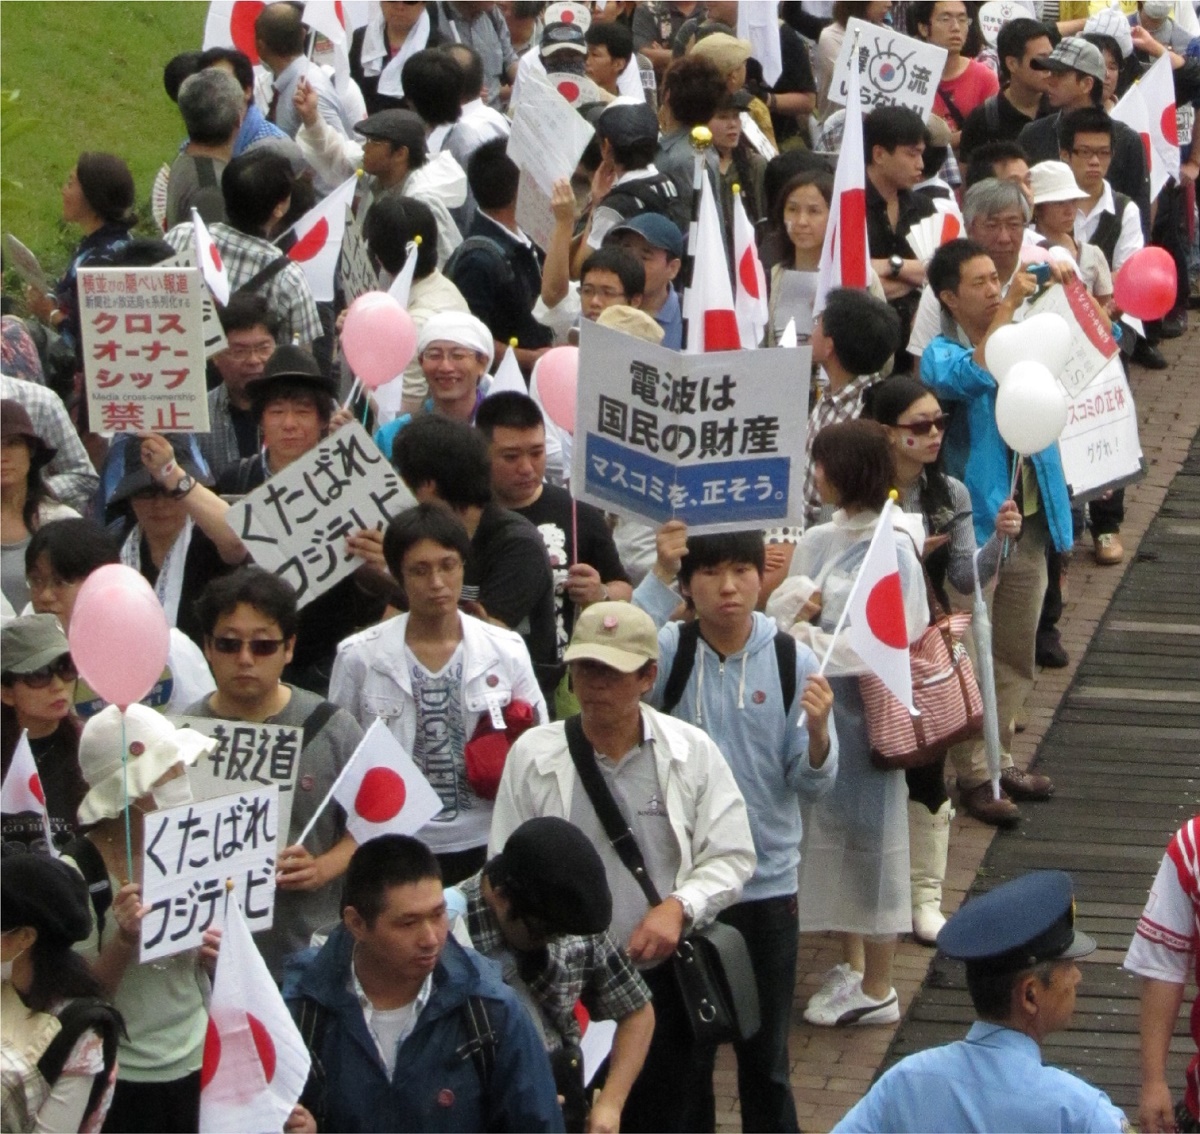 写真・図版 : ネットでの呼びかけに集まった、韓流ブームを批判する人々。東京・お台場のフジテレビを取り囲み、数千人規模のデモになった＝2011年8月21日